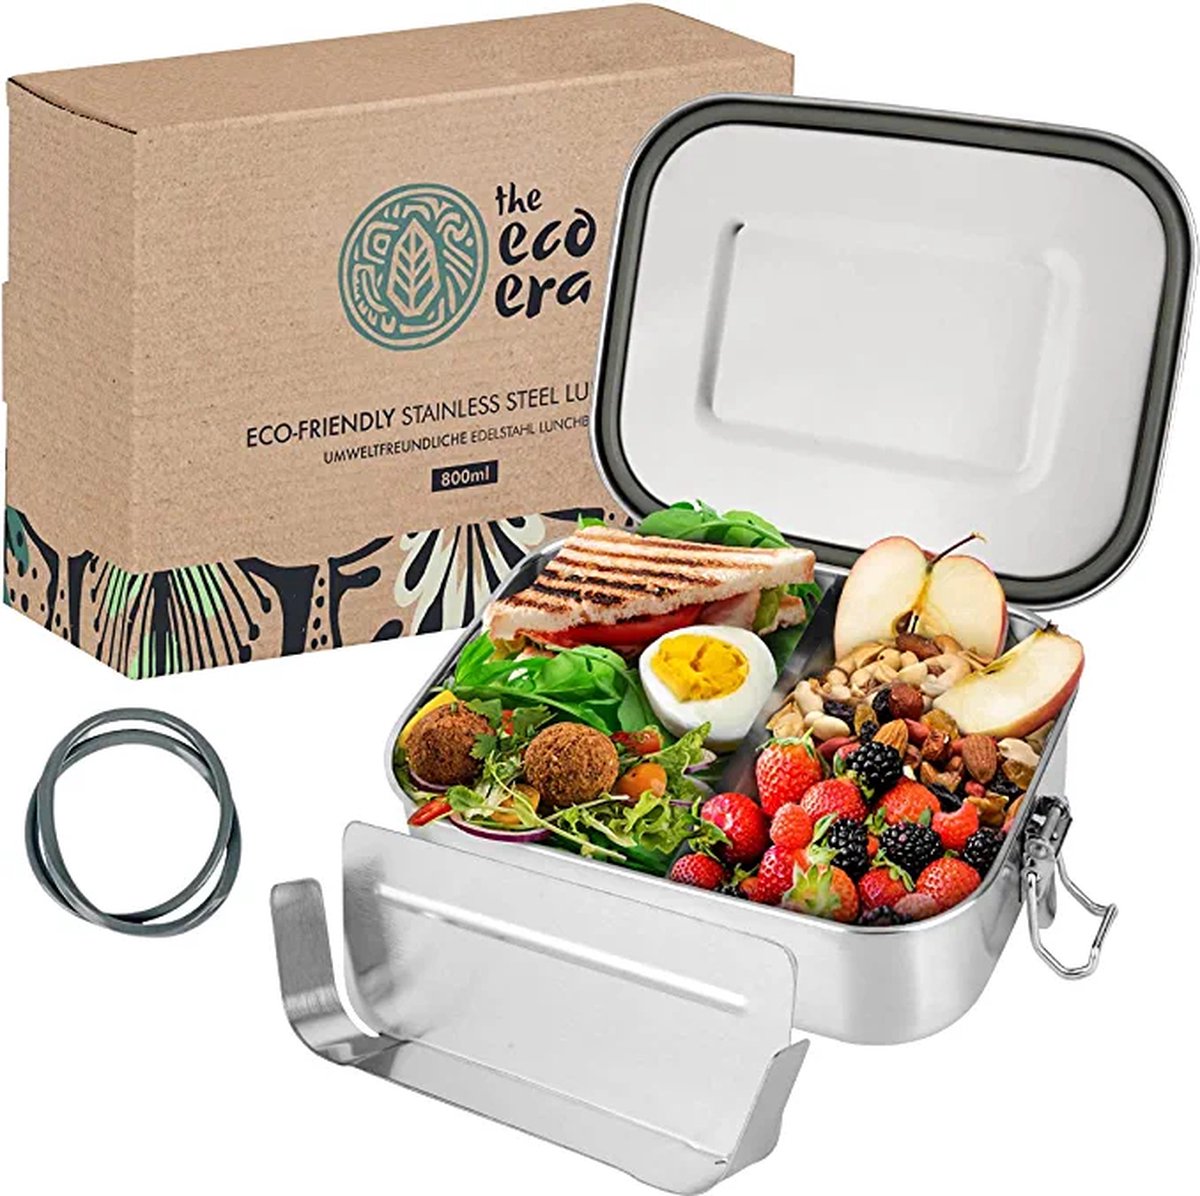 Roestvrijstalen broodtrommel en lunchbox, lekvrij, milieuvriendelijke Eco Bento Box, plasticvrij, met flexibele vakken, sluitclips, eenvoudig te reinigen, 800 ml